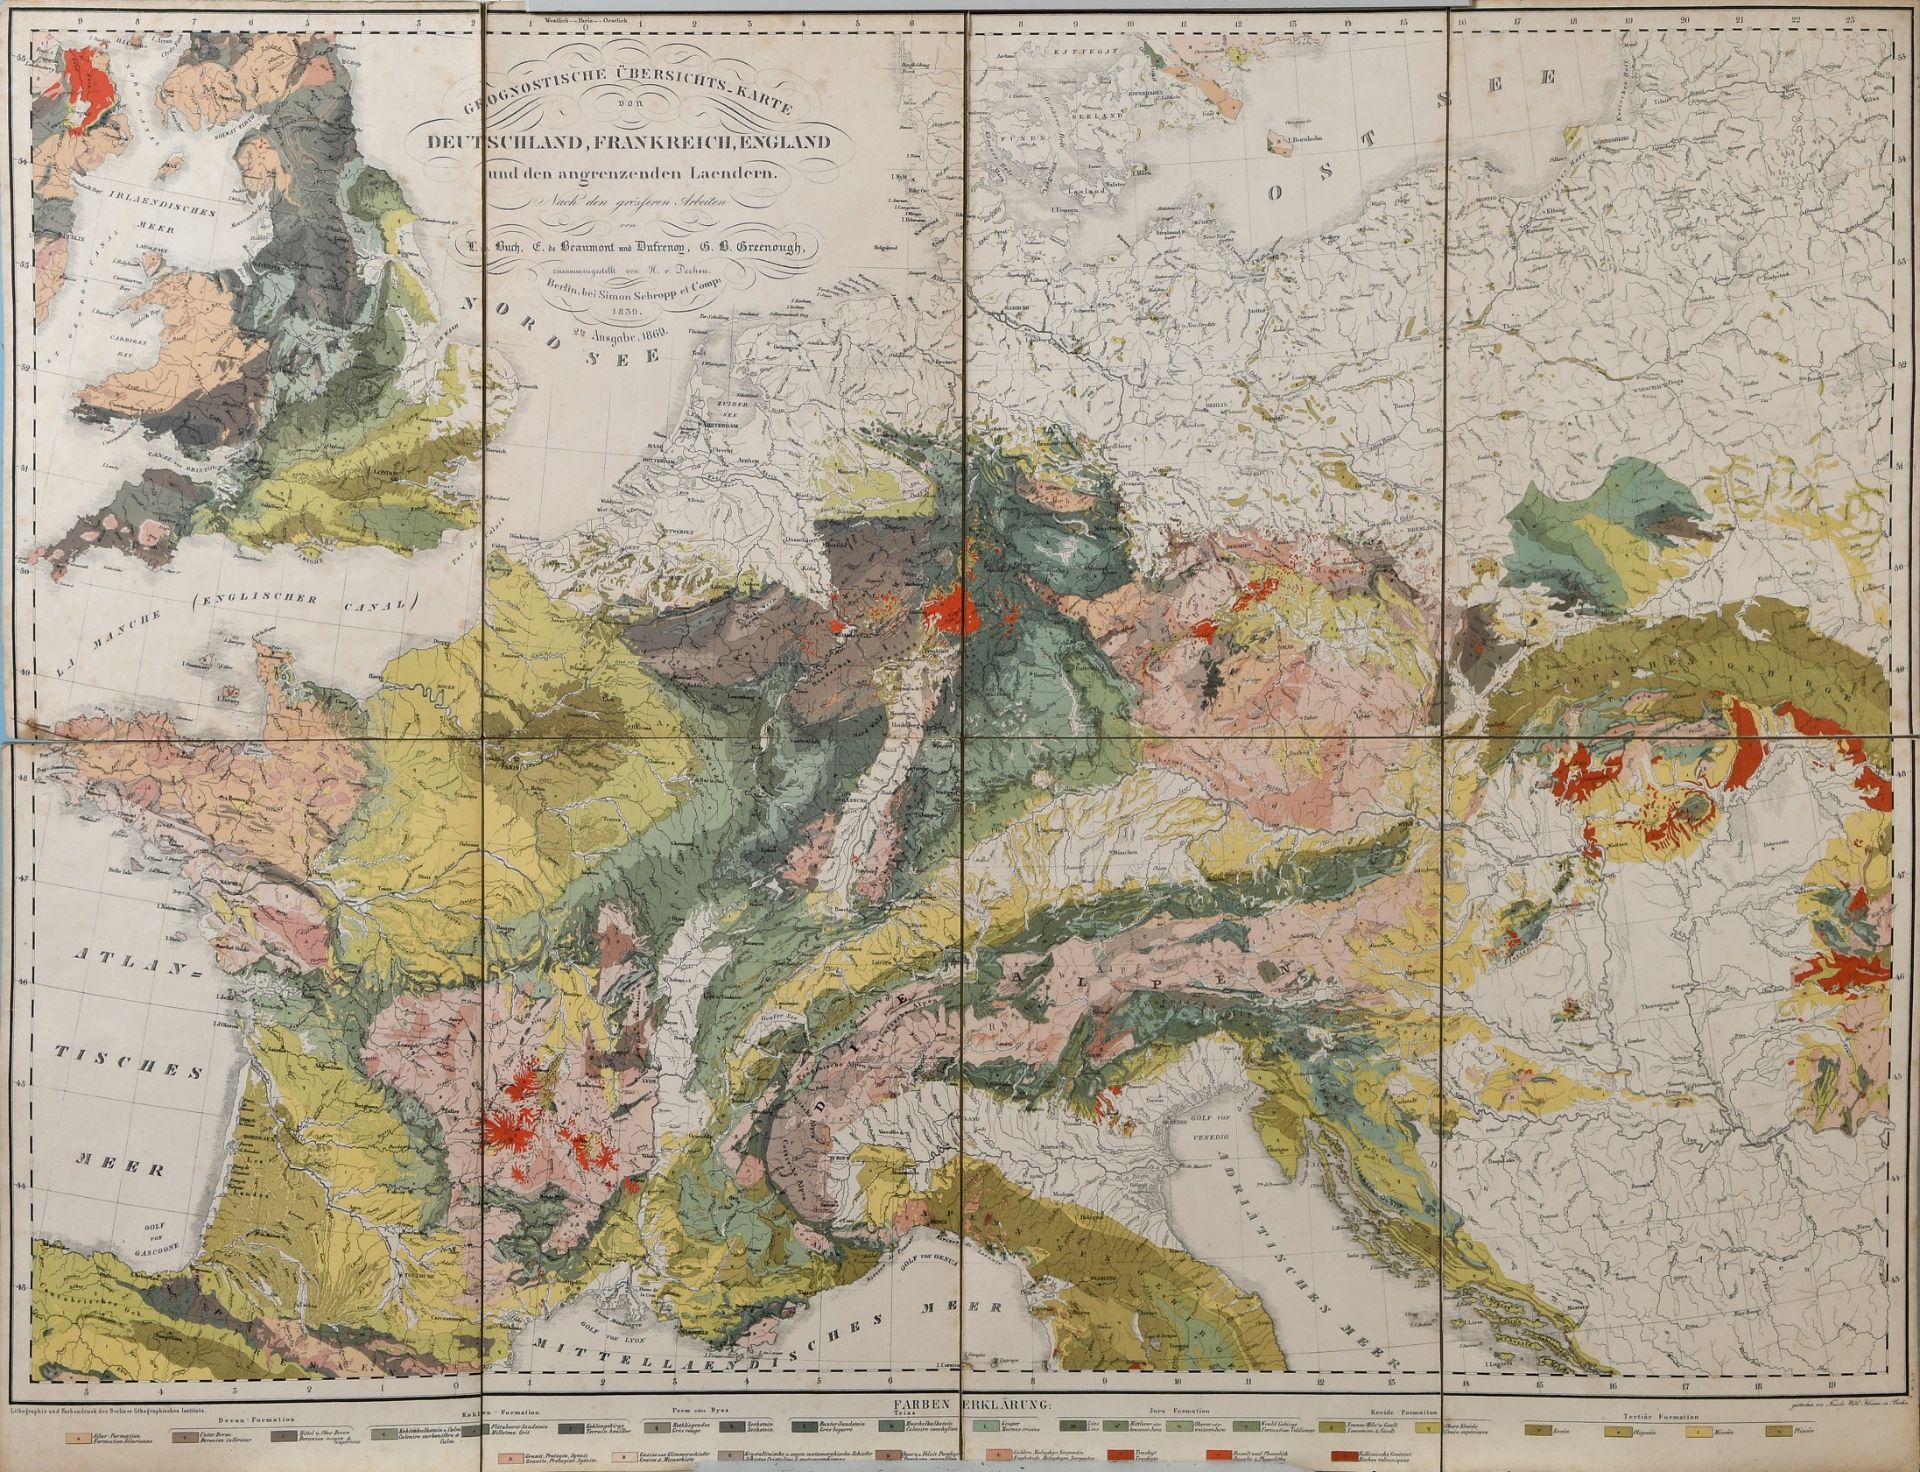 Landkarte " Geognostische Übersichts-Karte von Deutschland, Frankreich, England" - Bild 3 aus 6